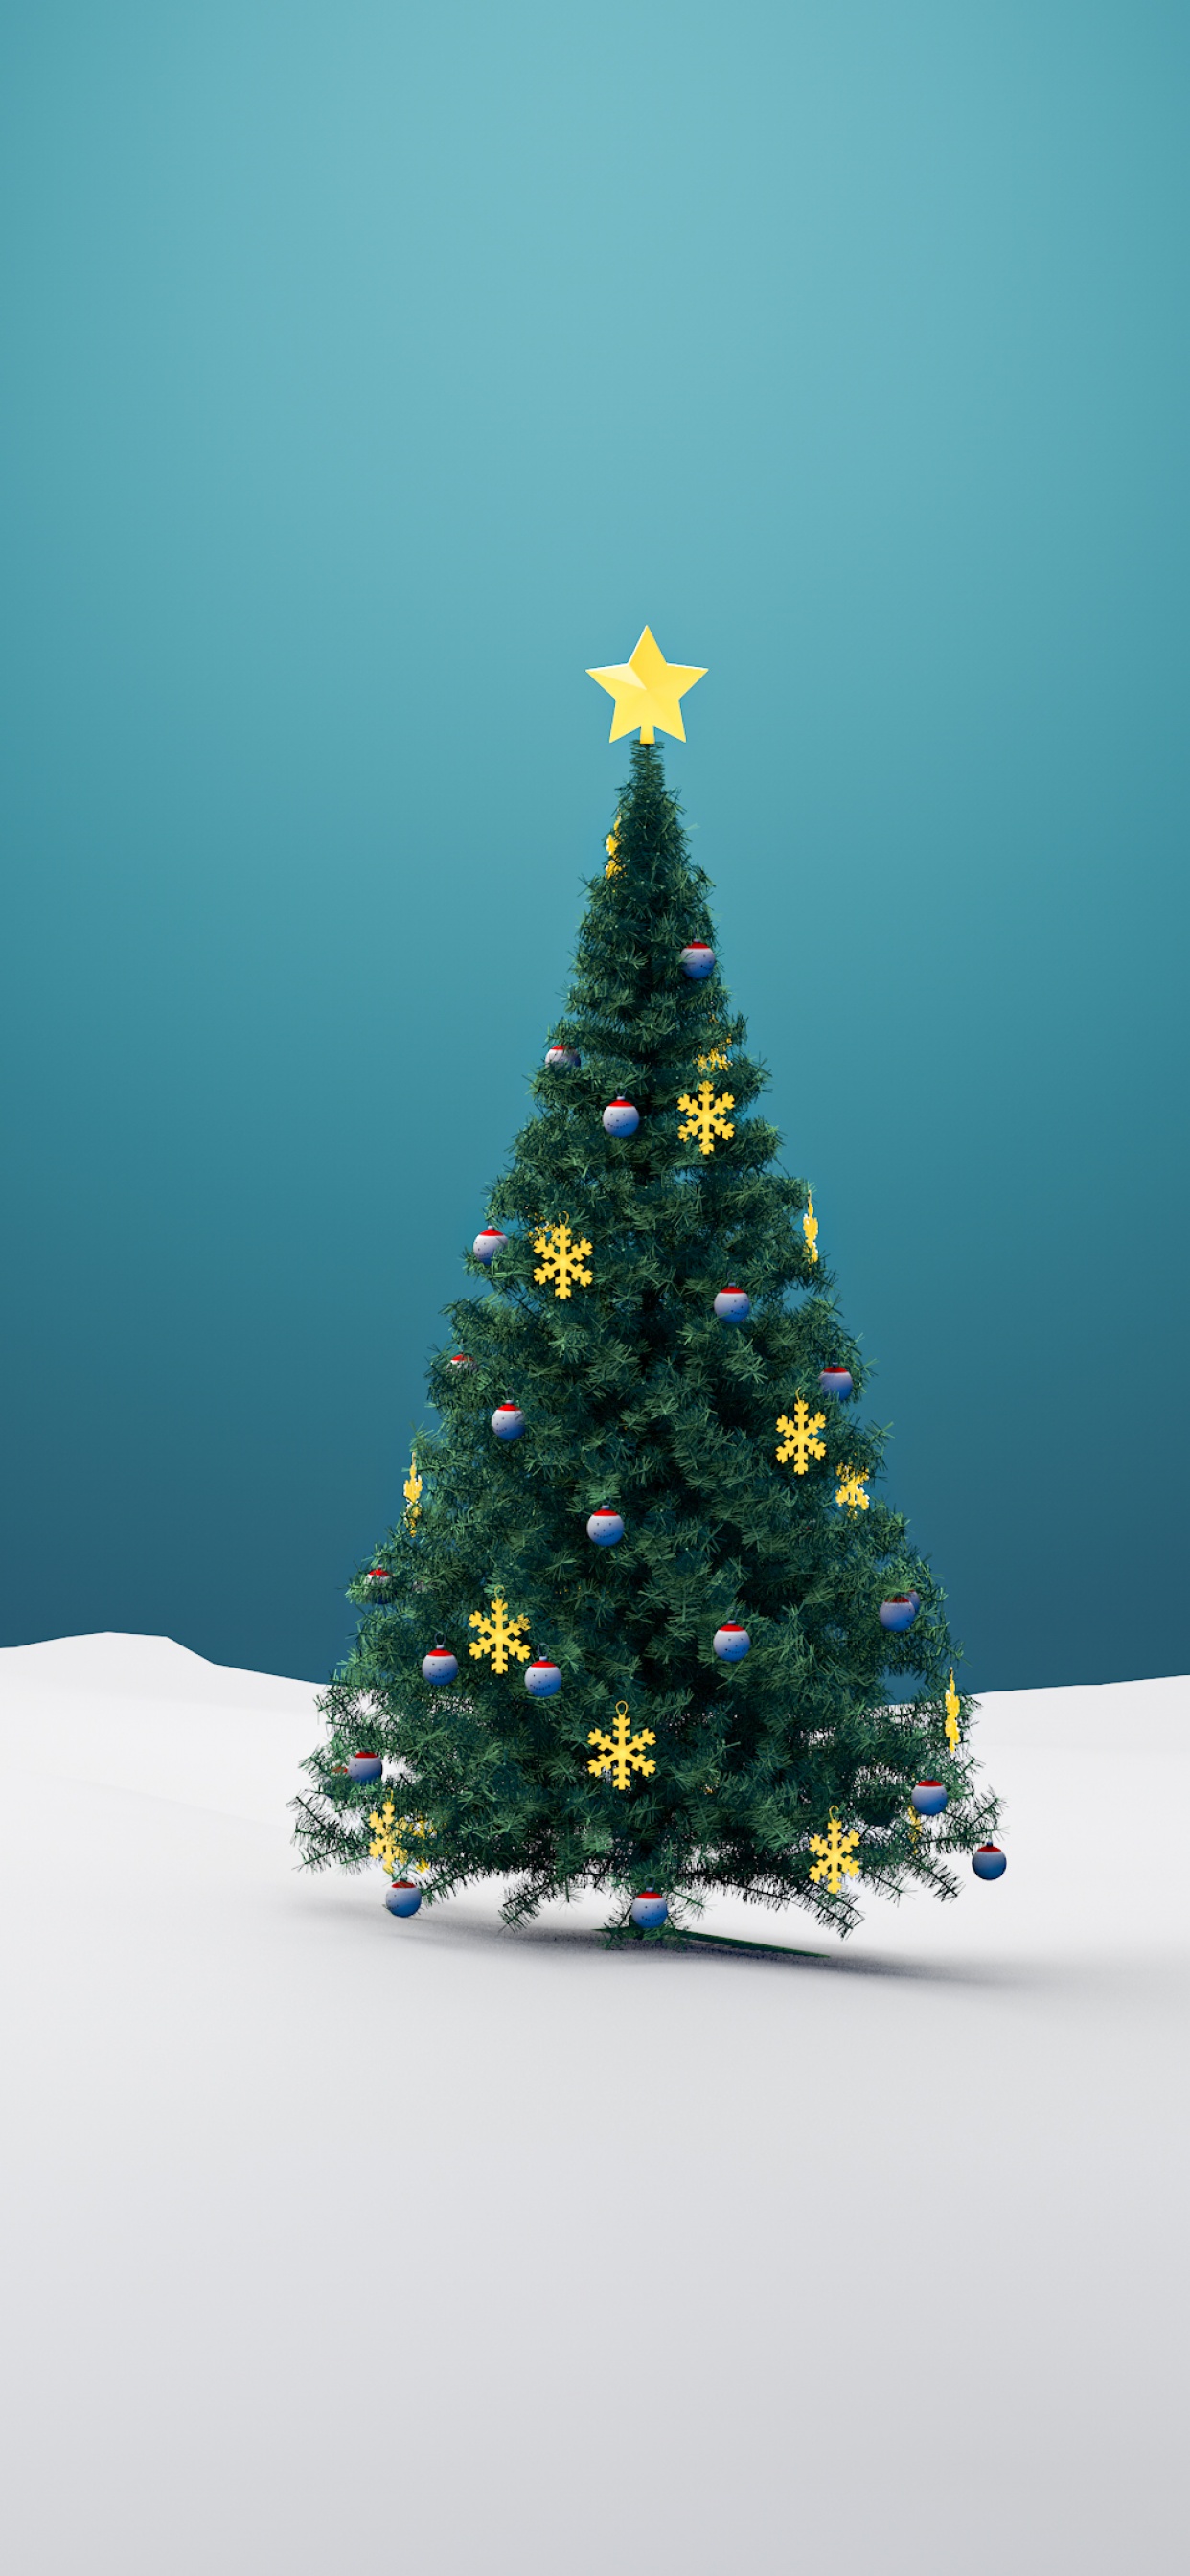 Cây Giáng sinh là biểu tượng không thể thiếu của mùa lễ hội năm nay. Hãy bắt đầu chuẩn bị để tạo nên không gian ấm cúng, tràn đầy niềm vui cùng với gia đình và bạn bè. Cùng khám phá hàng loạt hình ảnh 4K về cây Giáng sinh và trang trí nhà cửa tại đây.